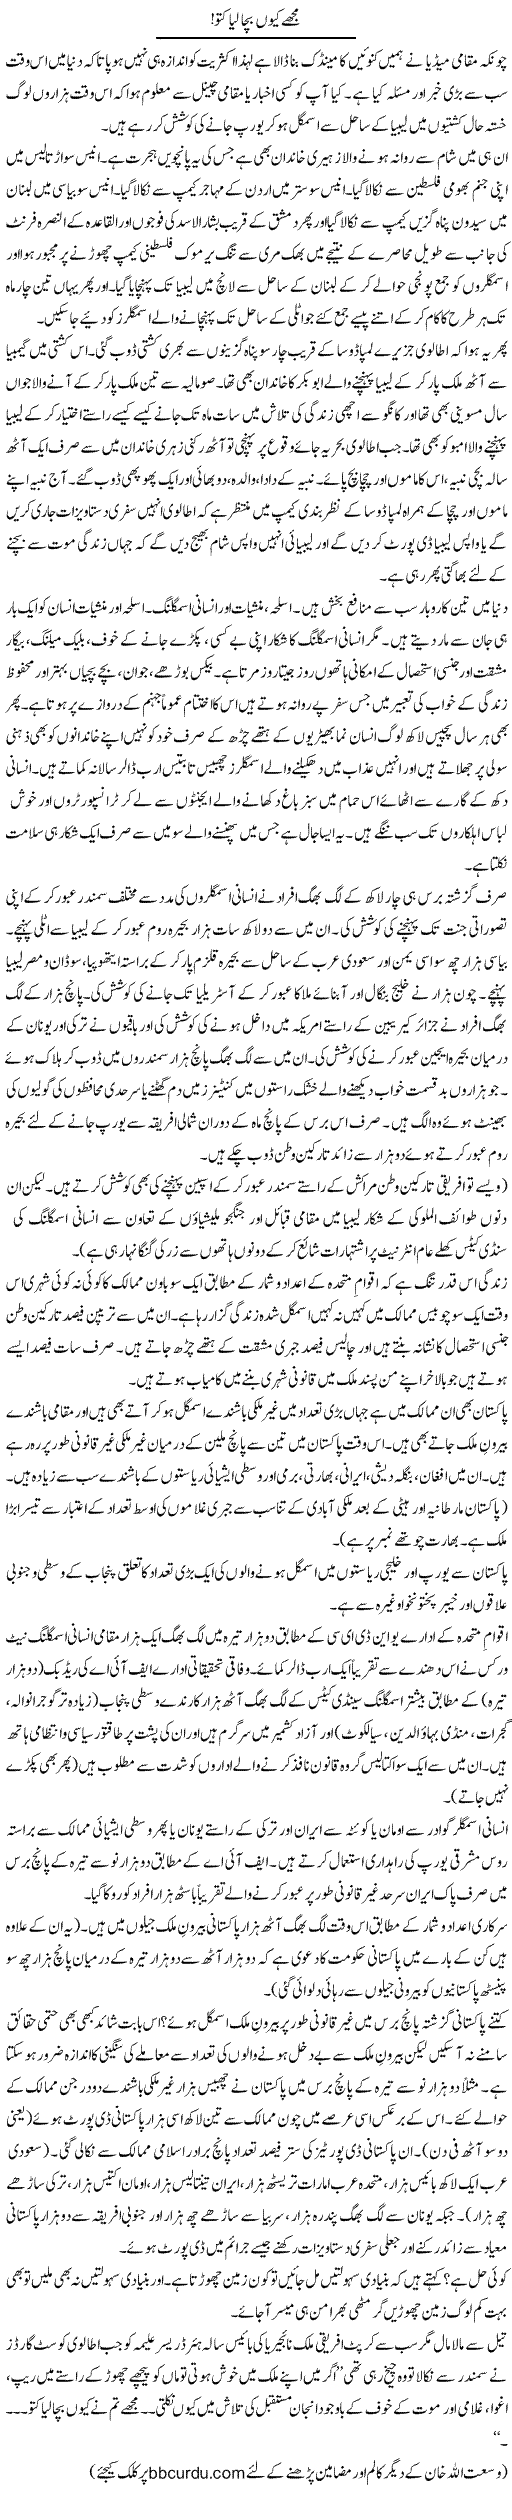 Mujhe Kyun Bacha Liya Kutto! | Wusat Ullah Khan | Daily Urdu Columns